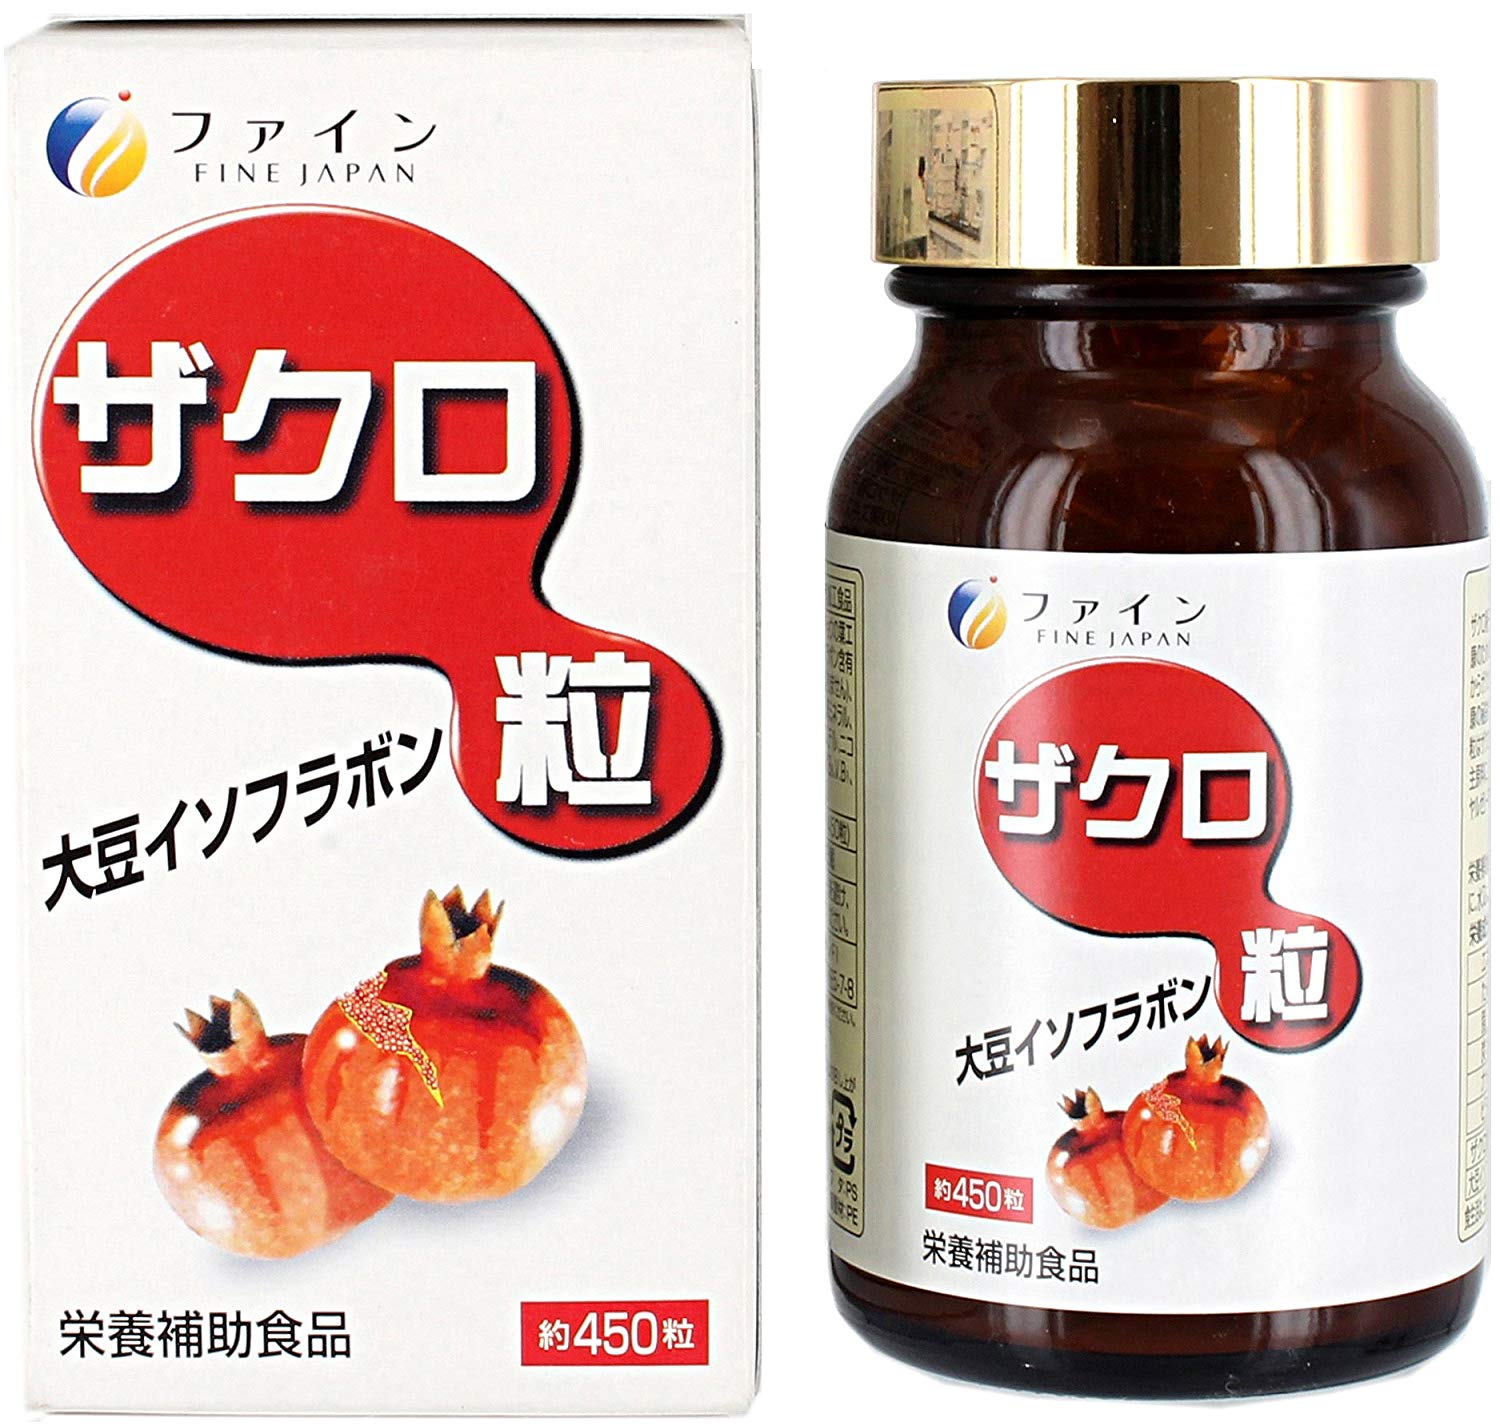 Fine Japan  - Комплекс для женского здоровья и продления молодости с экстрактом граната и изофлавонами сои, на 30 дней